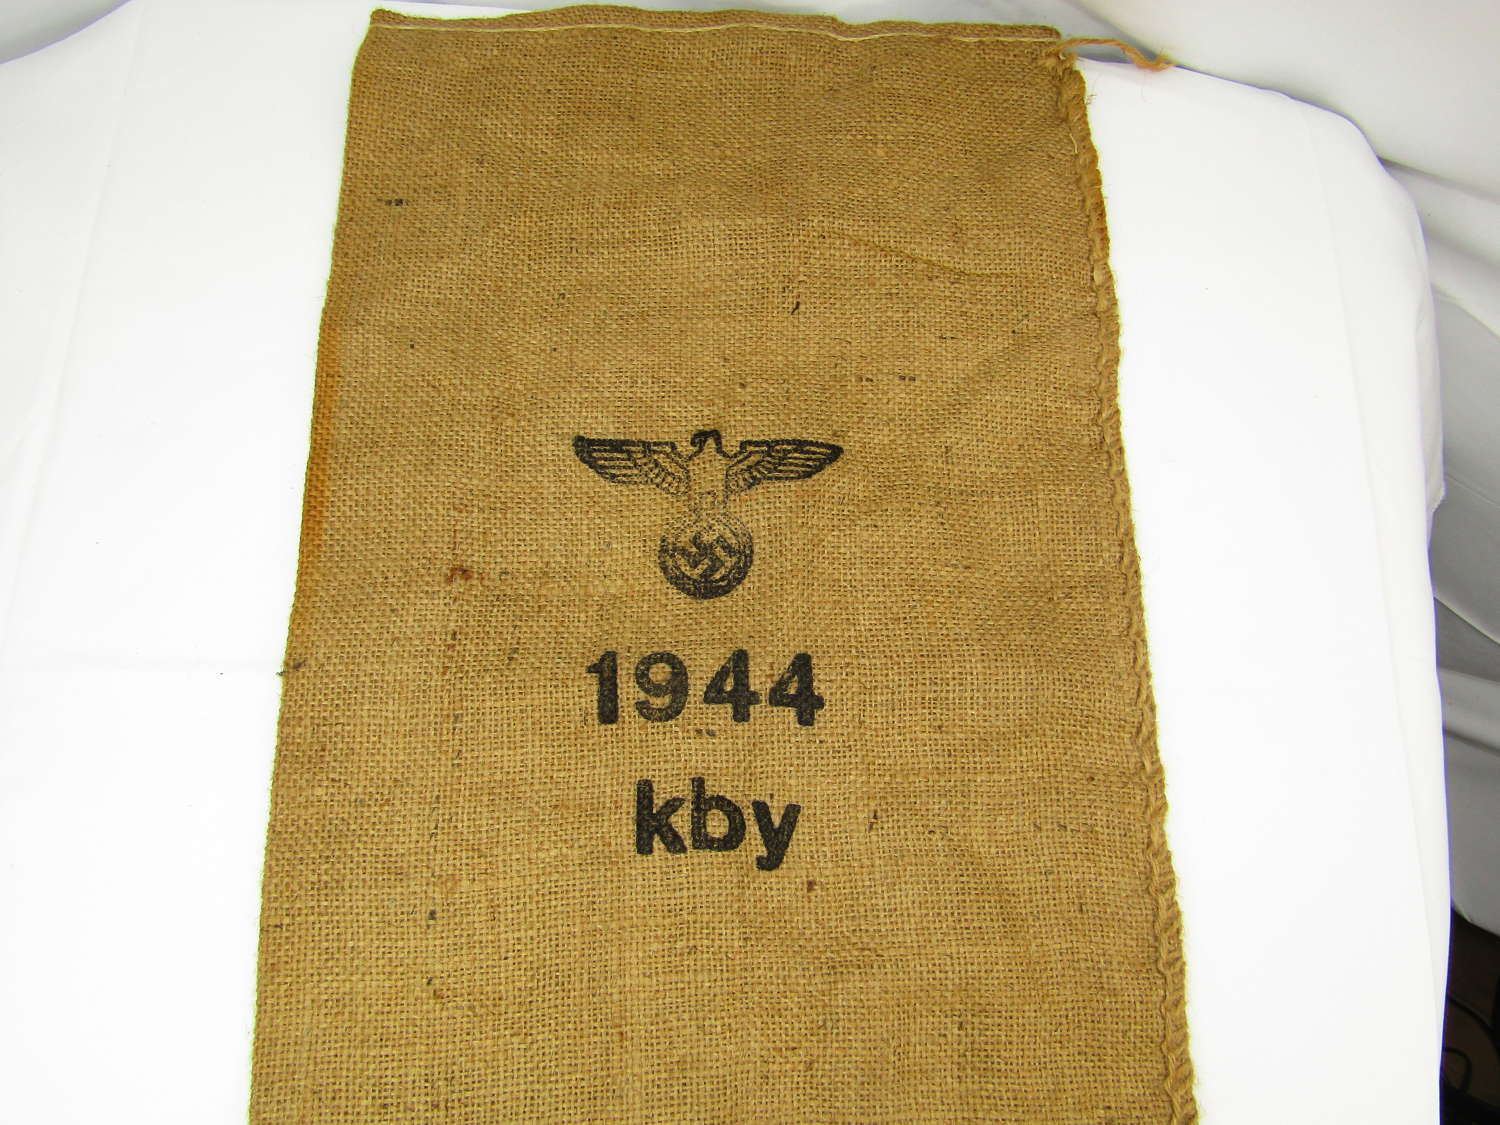 WW2 German Army issue bag